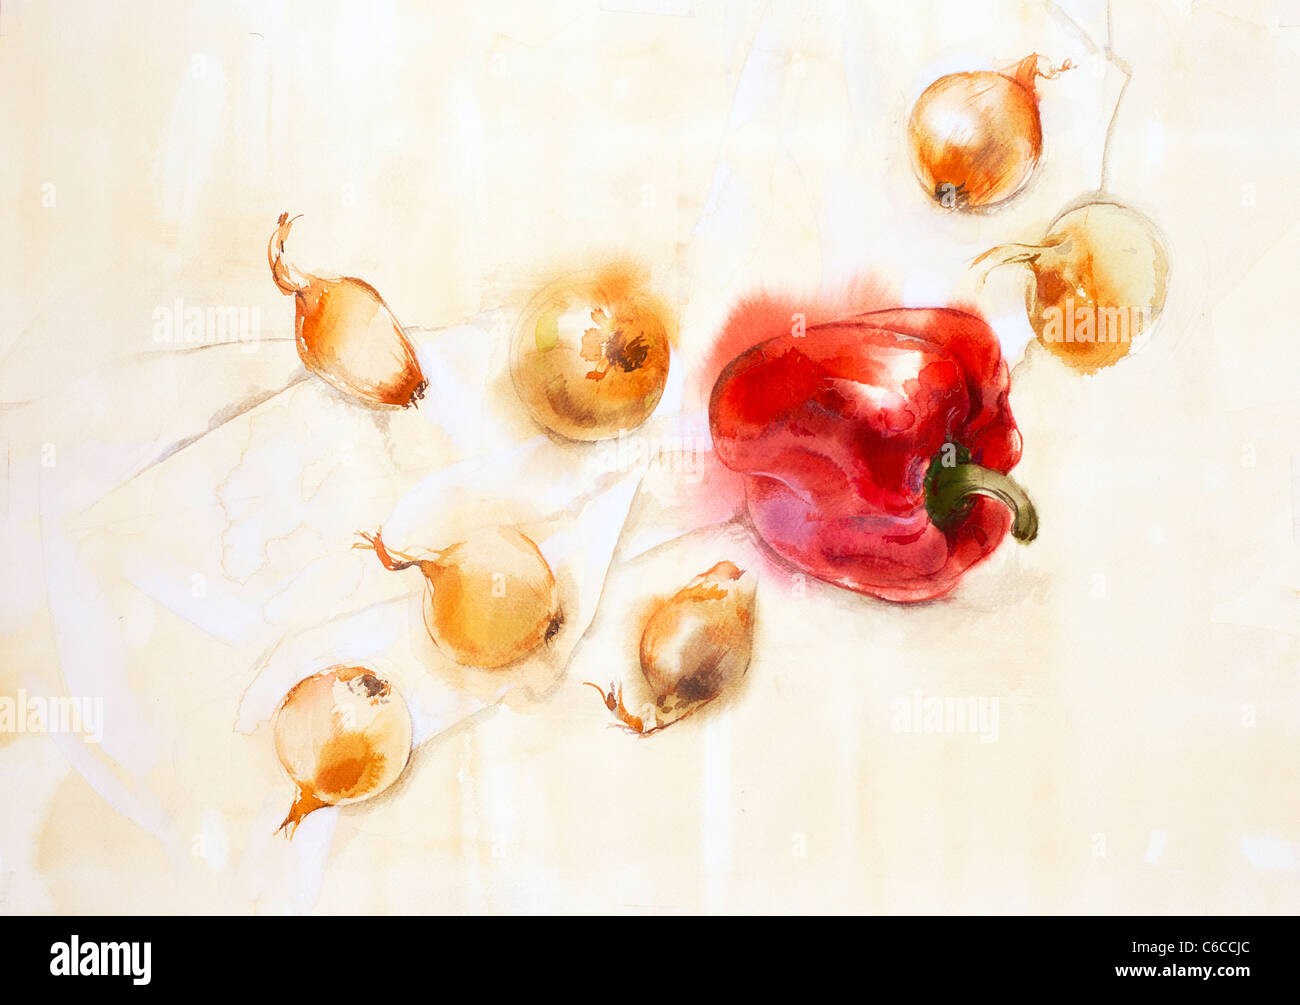 Peperoni rossi e le cipolle della carta. Acquerello. Artista - Tanya Kazantseva, Bielorussia Minsk. Data di creazione - 2010 Foto Stock